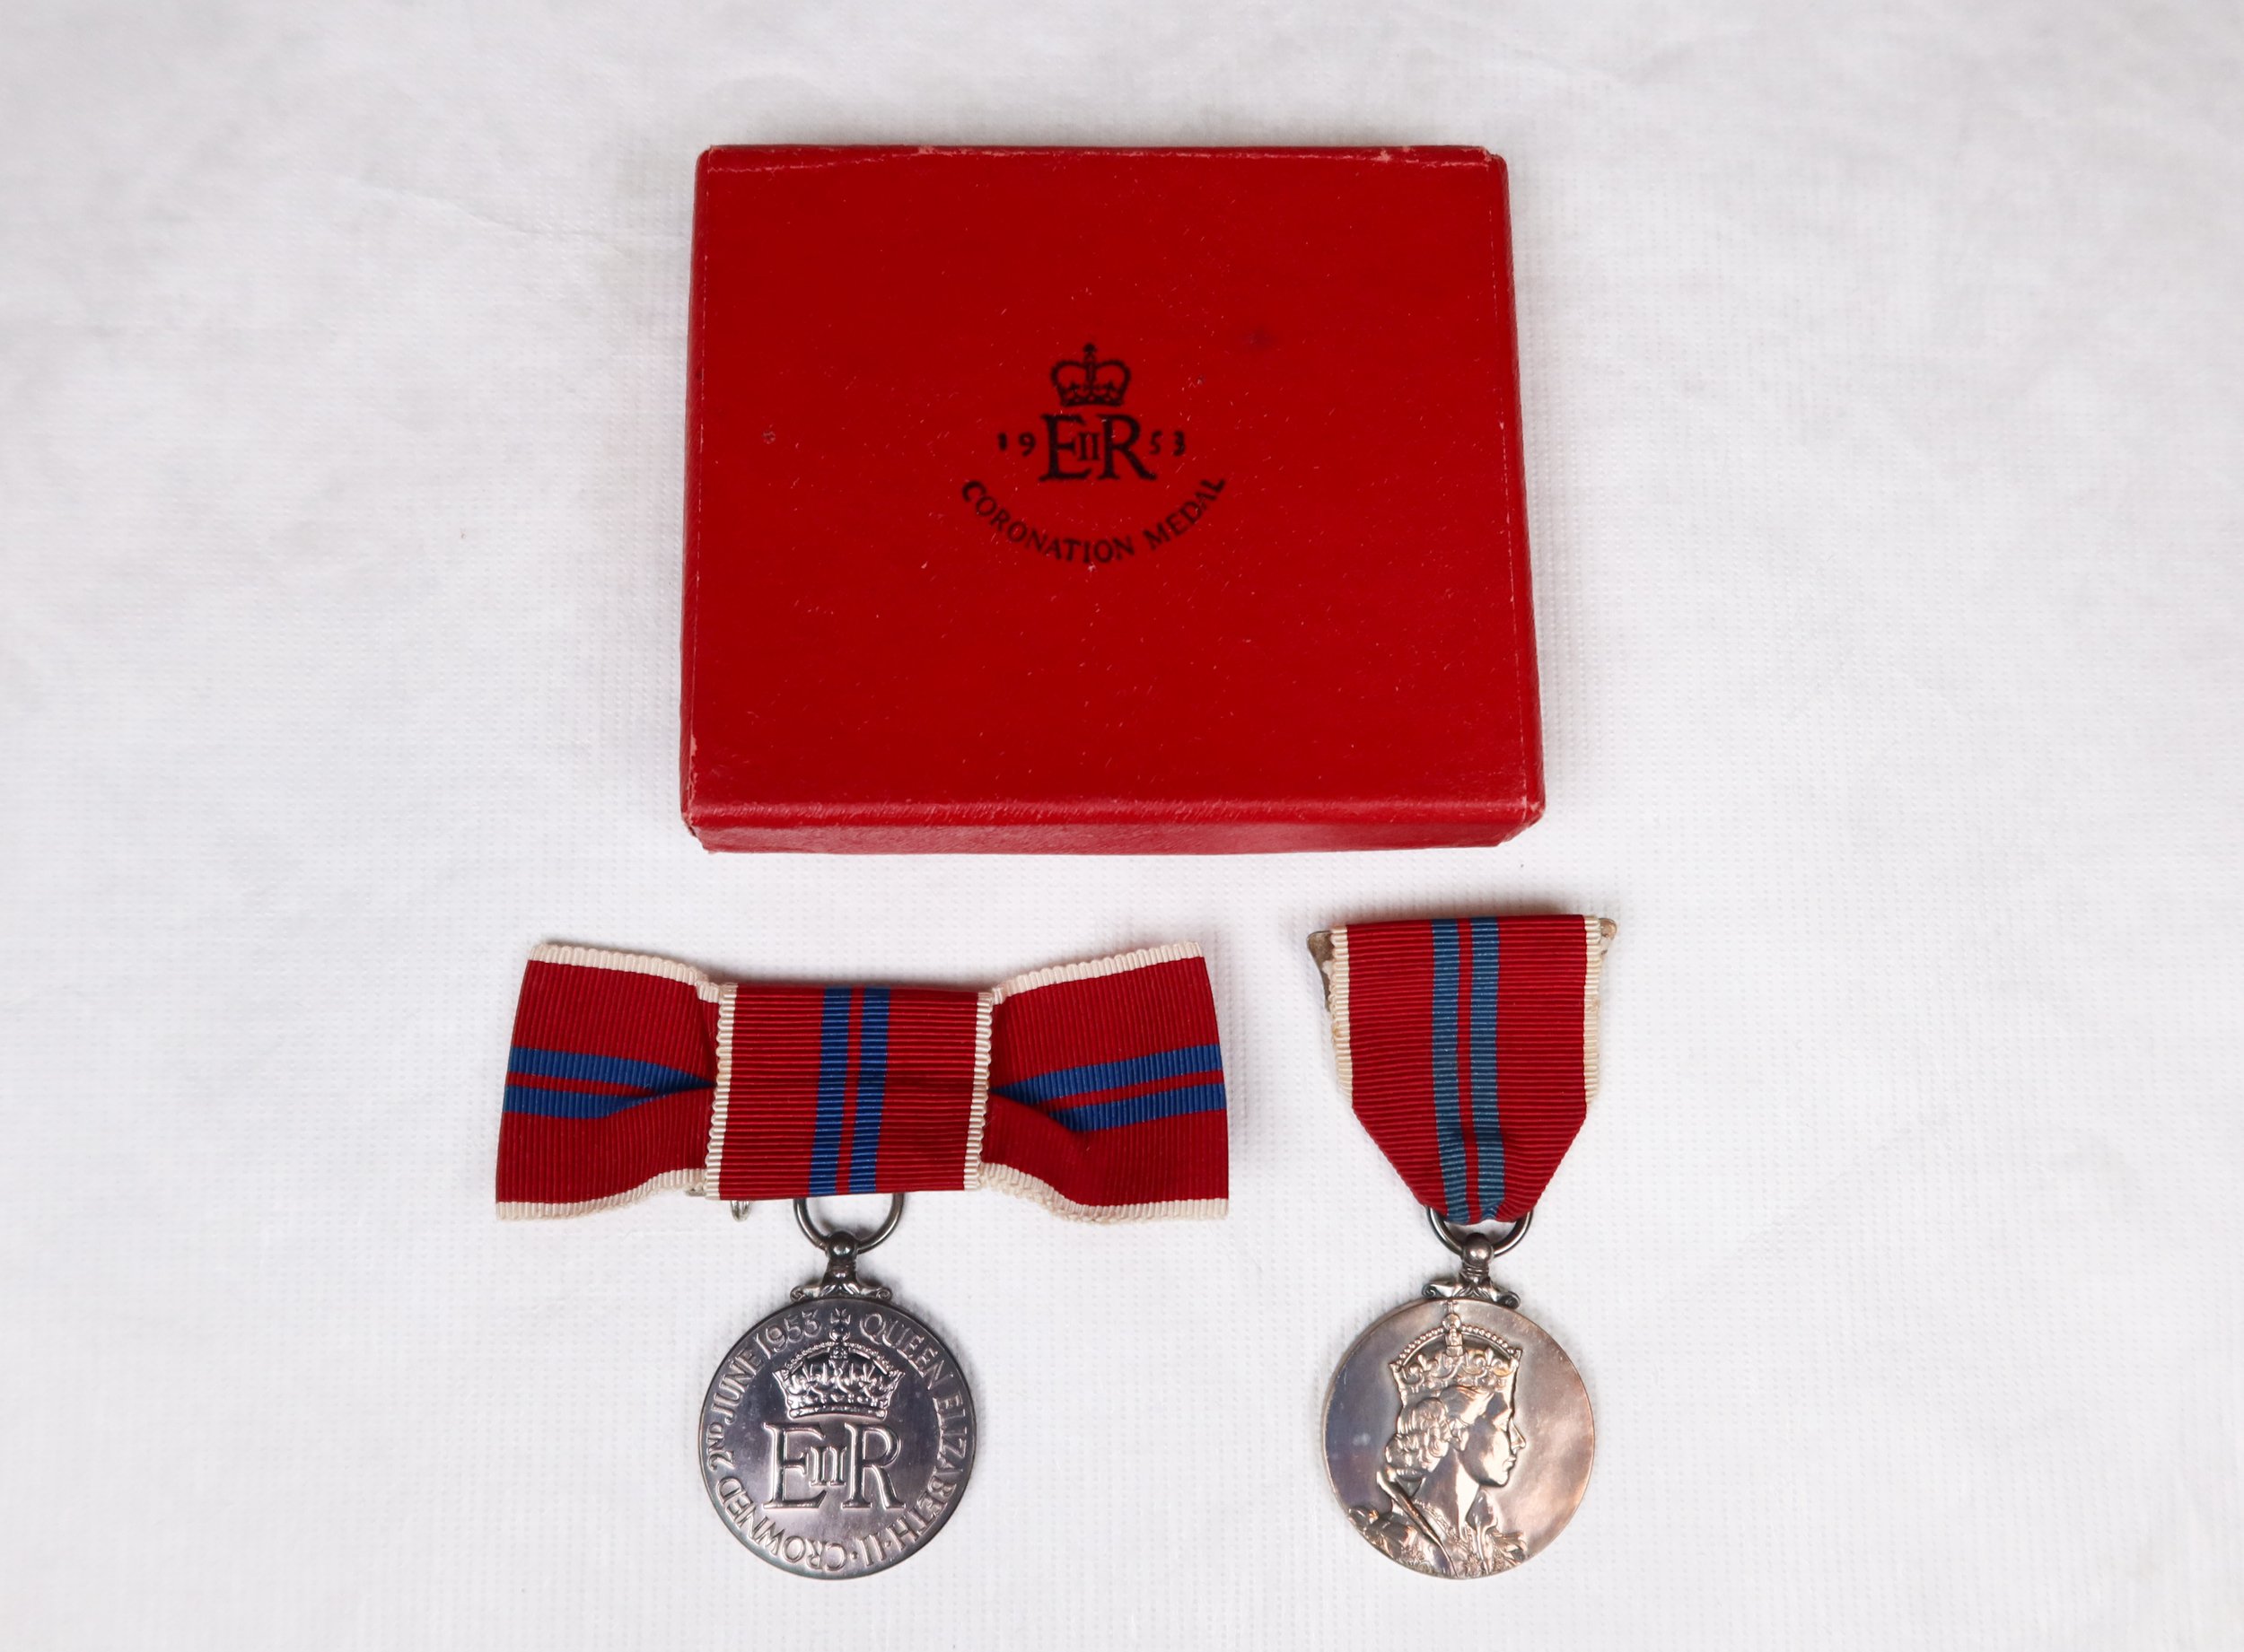  Coronation medals awarded to Sr Sarto Peardon and Sr Giovanni Ackman 